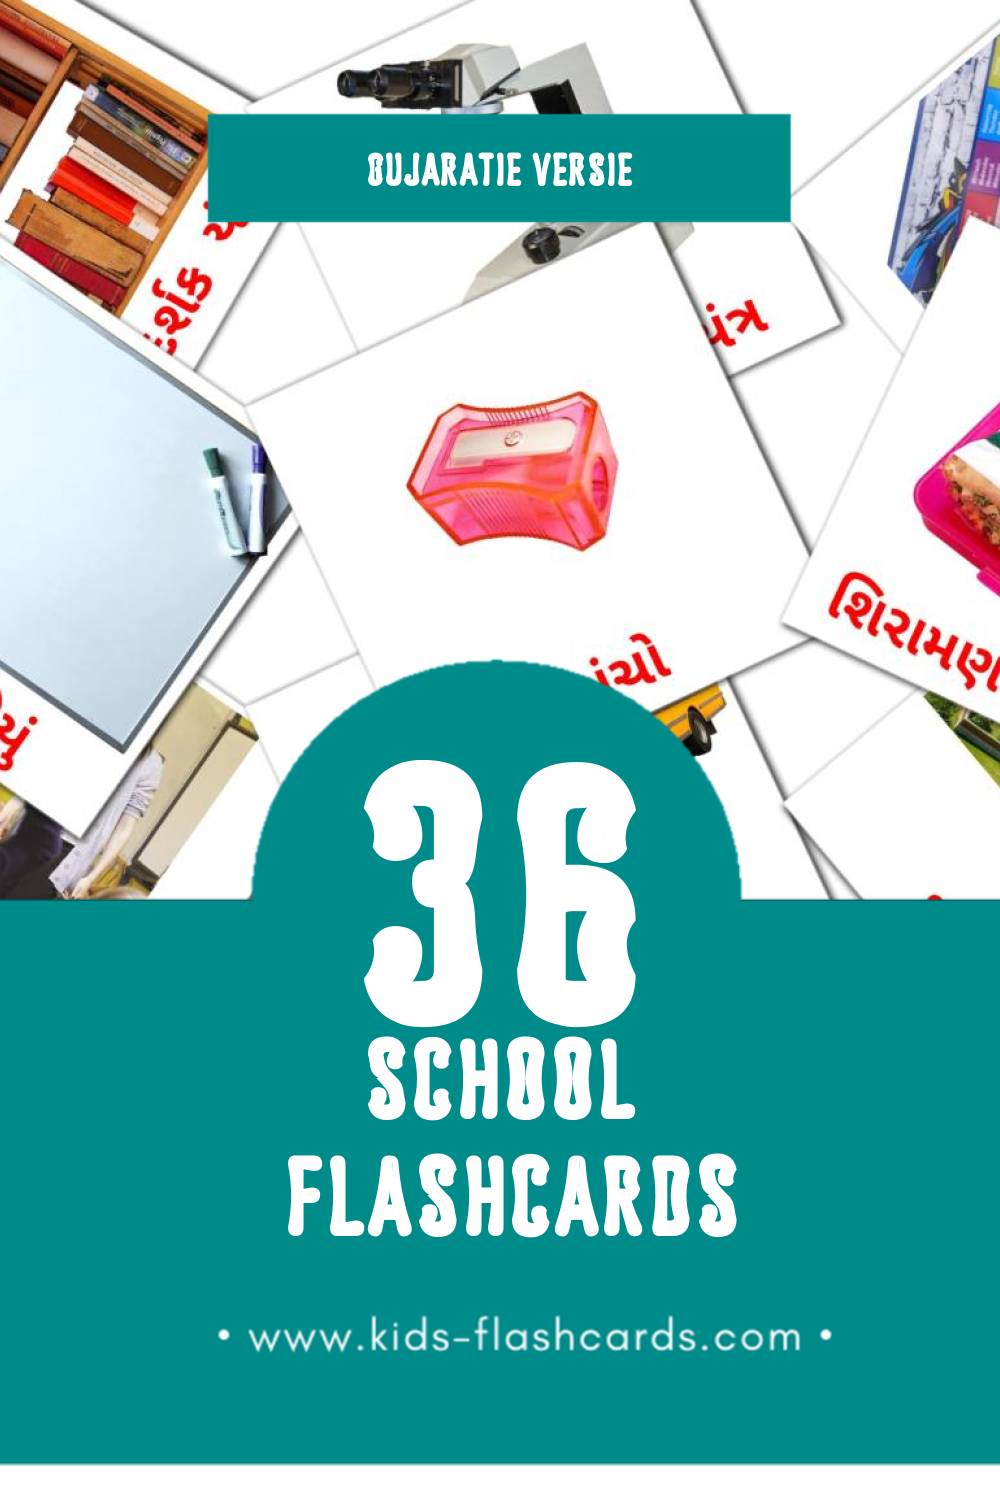 Visuele શાળા  Flashcards voor Kleuters (36 kaarten in het Gujarati)